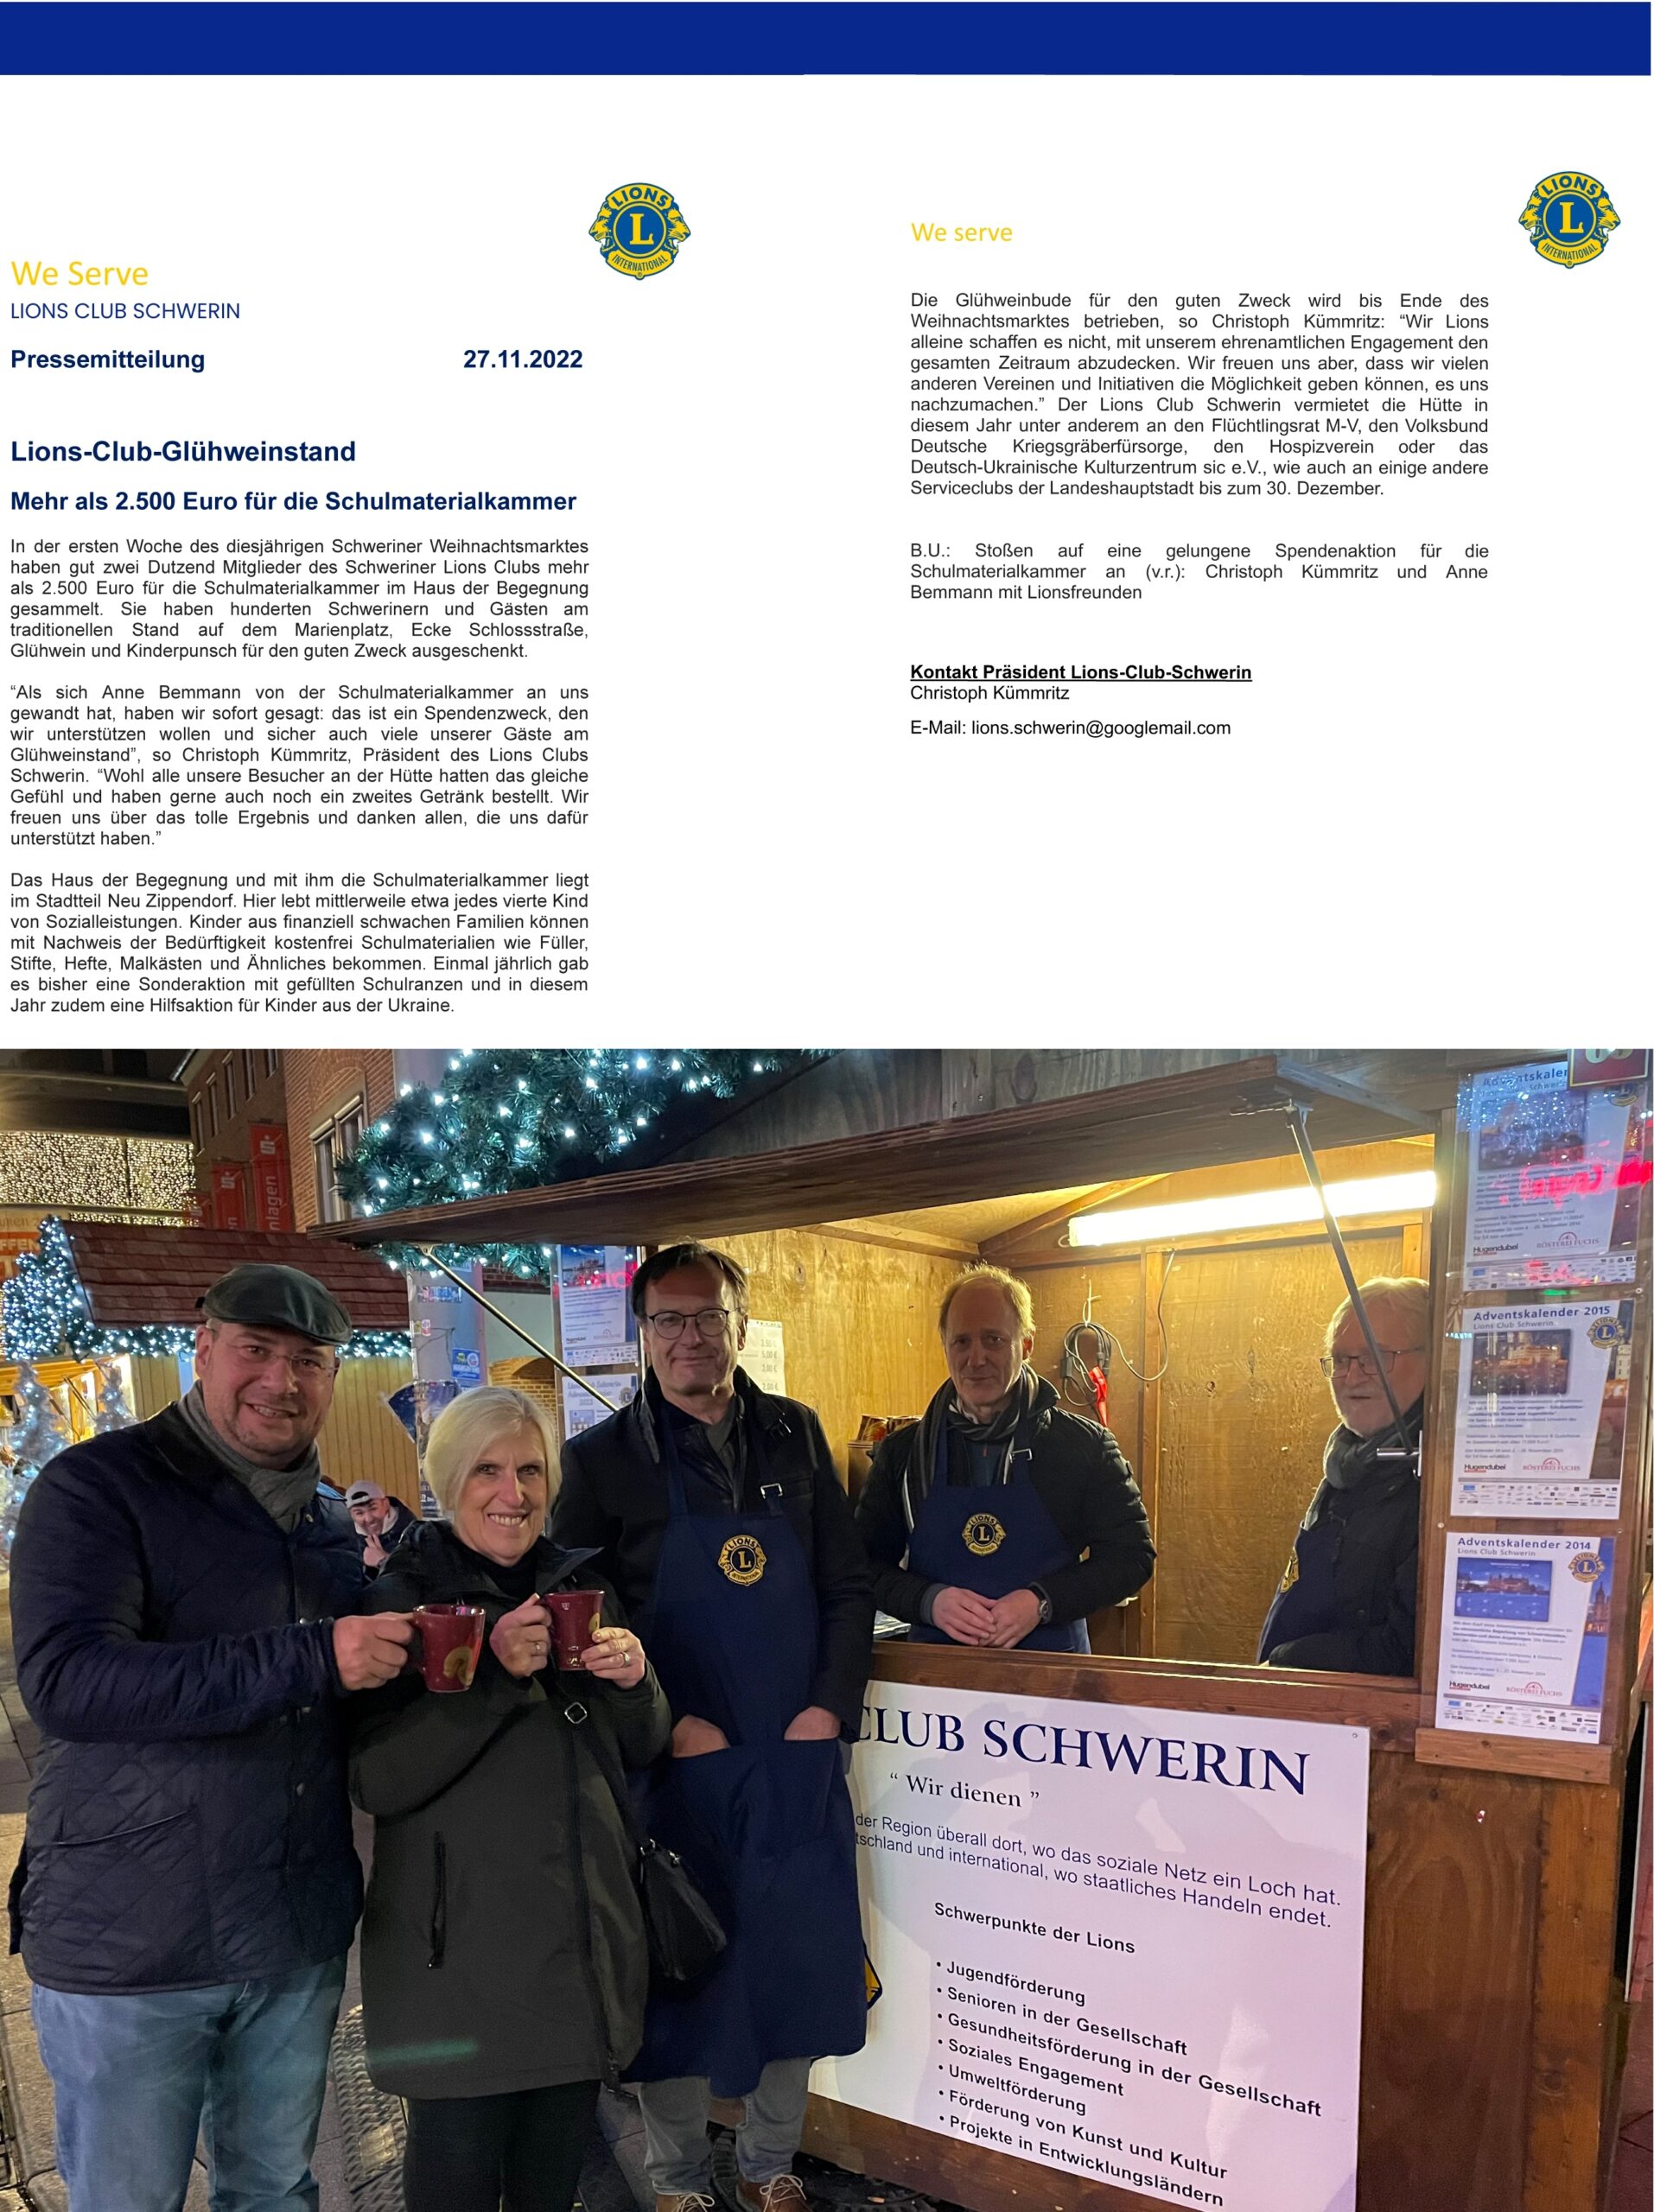 Pressemitteilung Lions-Club-Schwerin vom 27.11.2022